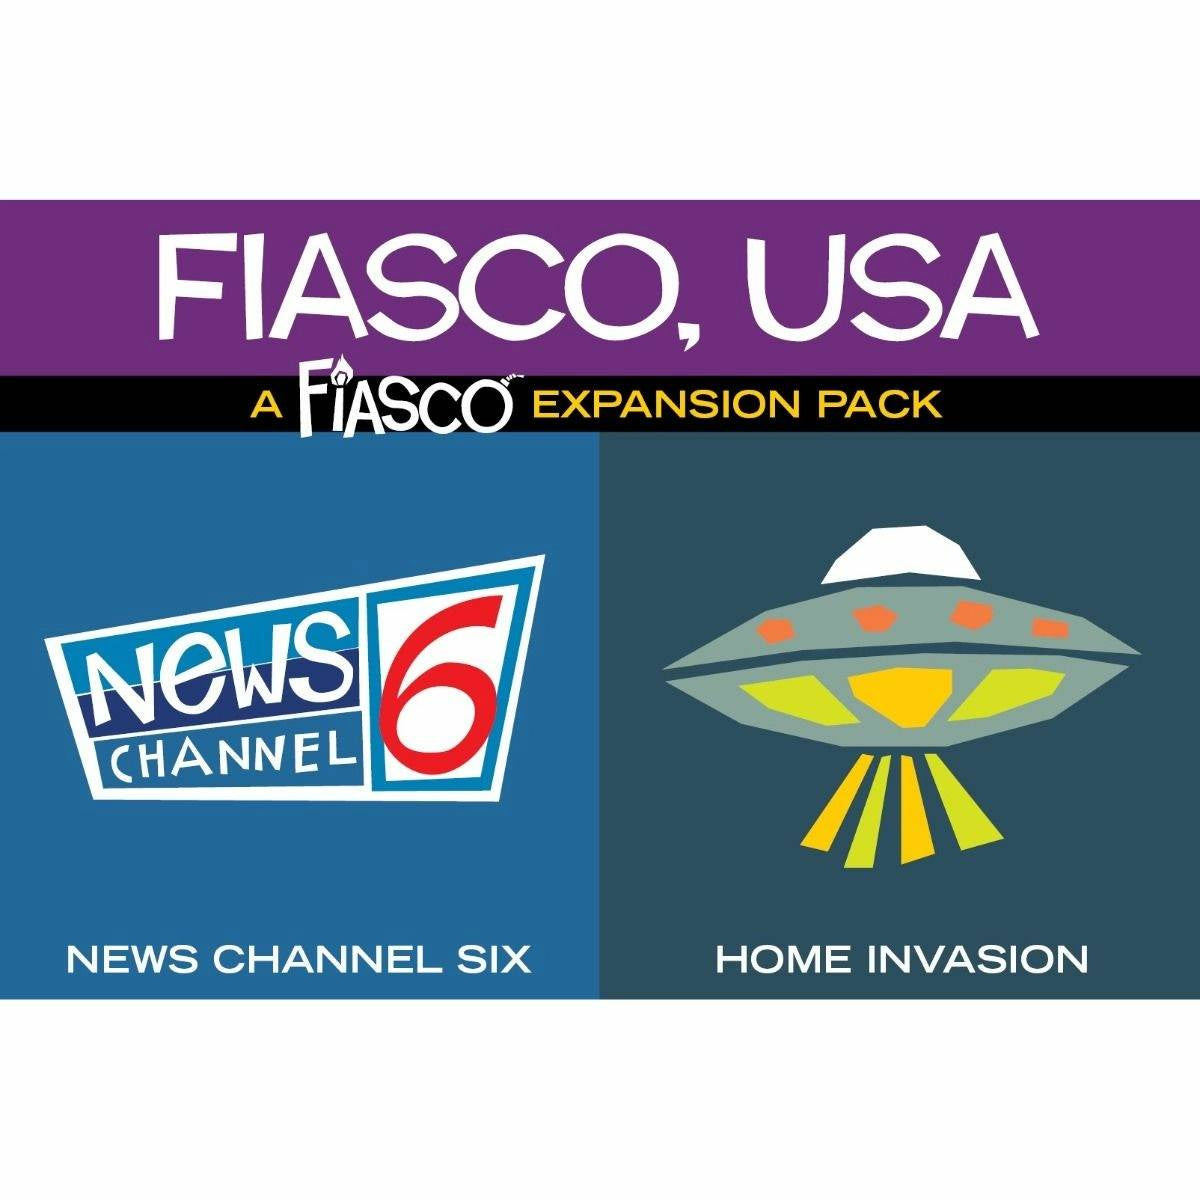 Fiasco Expansion Pack: Fiasco USA